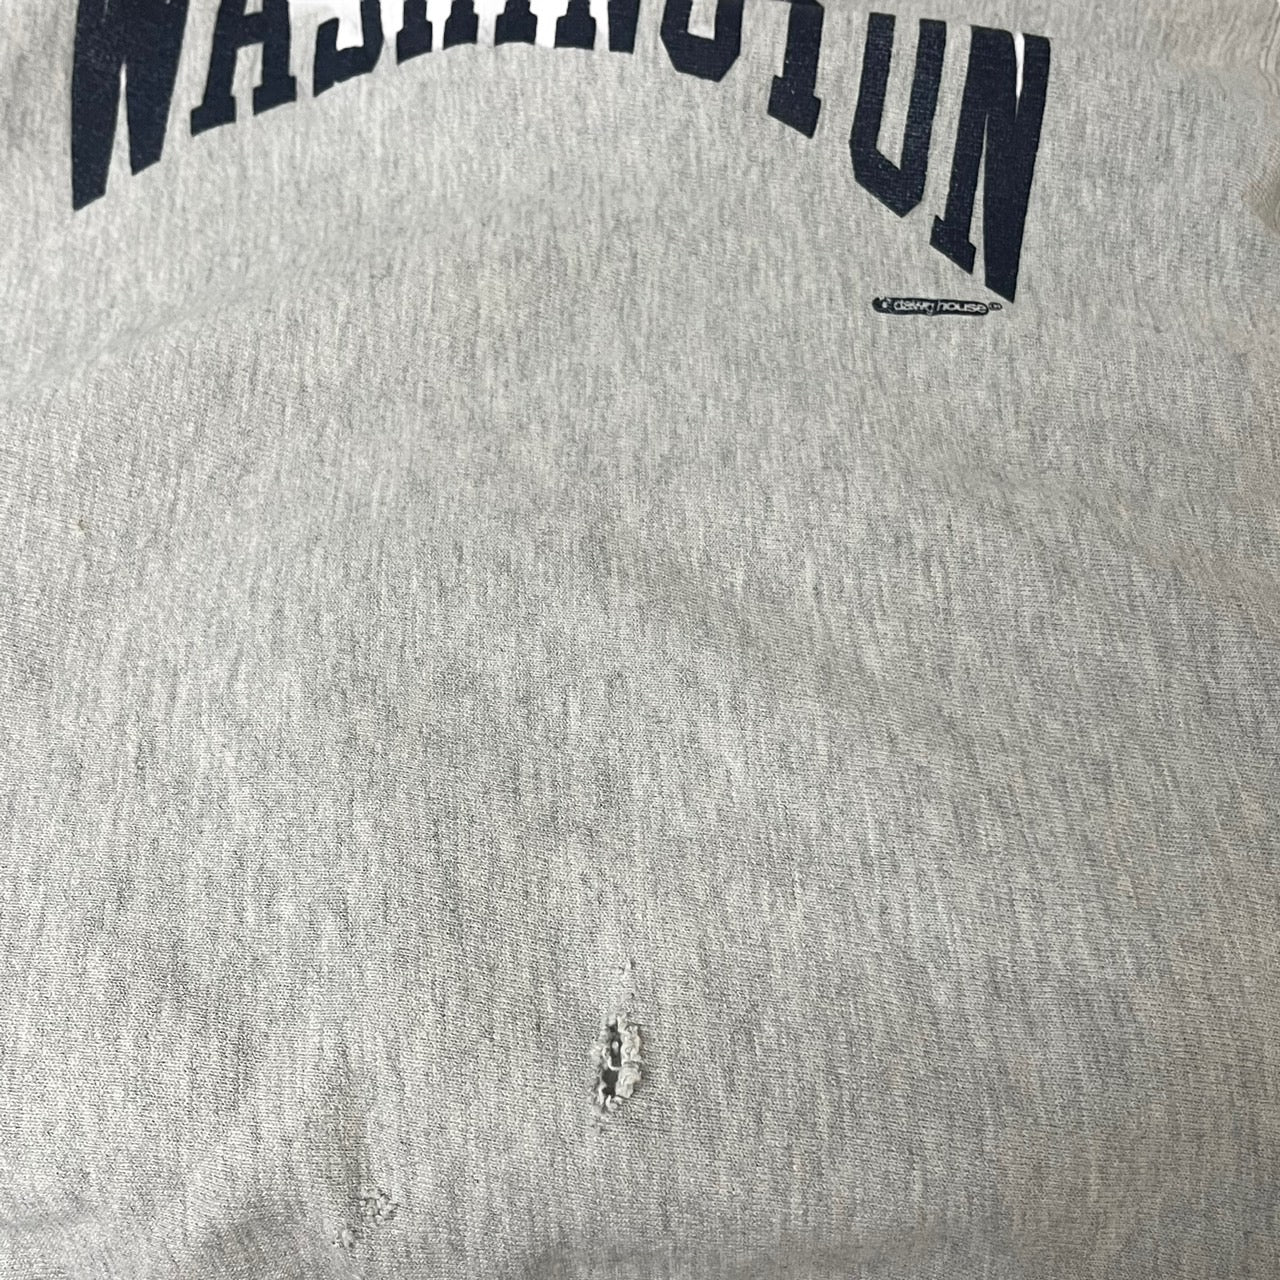 Champion(チャンピオン) 90's”WASHINGTON”REVERSE WAVE sweat shirt/アーチロゴプリントリバースウィーブスウェット 表記無し(Mサイズ程度) ライトグレー 90年代/90s/USA製/ワシントン州